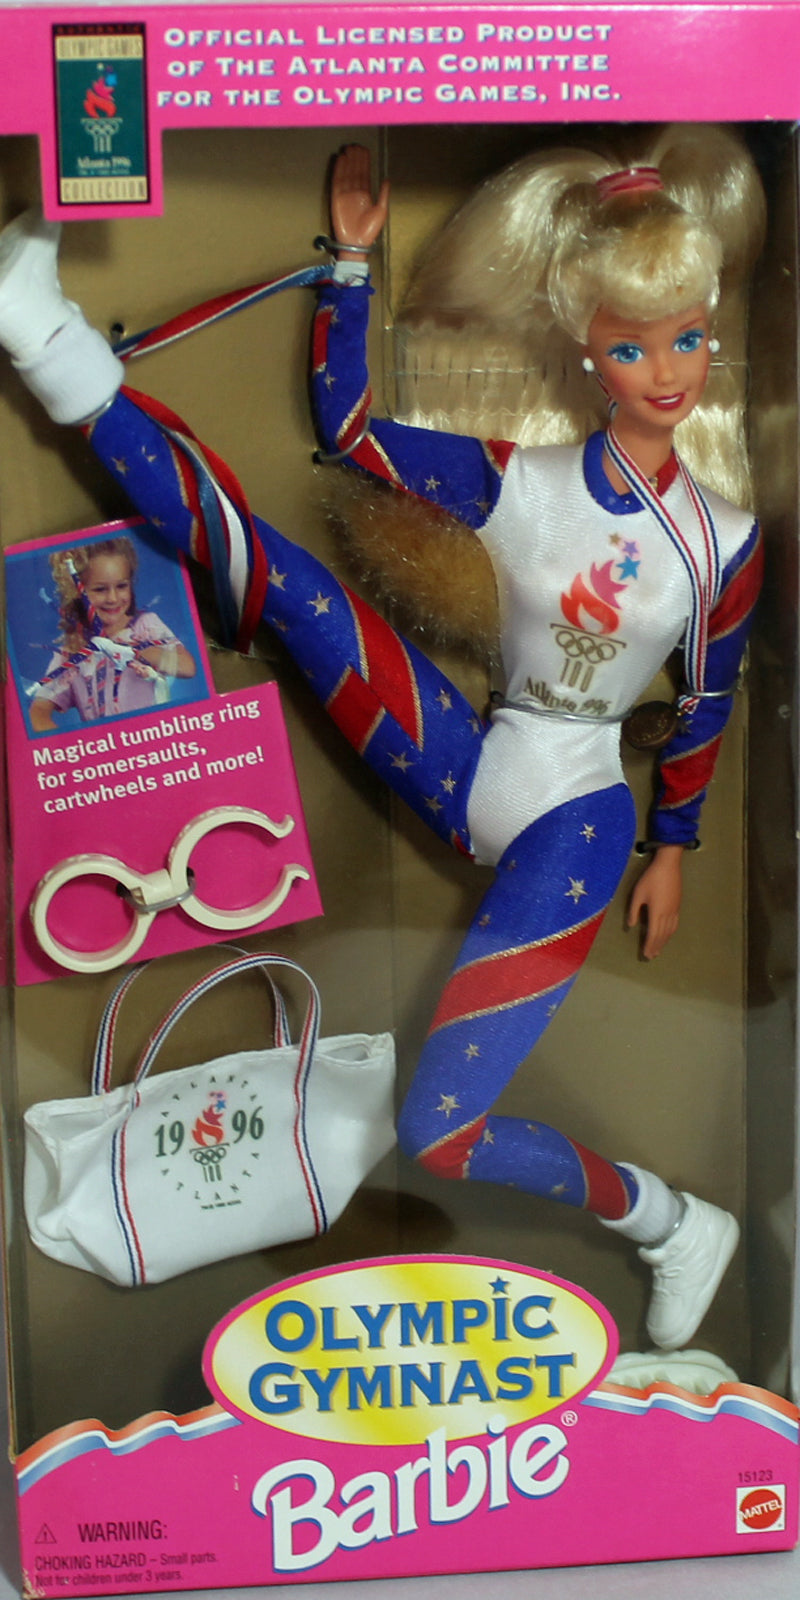 1995 Olympic Gymnast Barbie (15123)